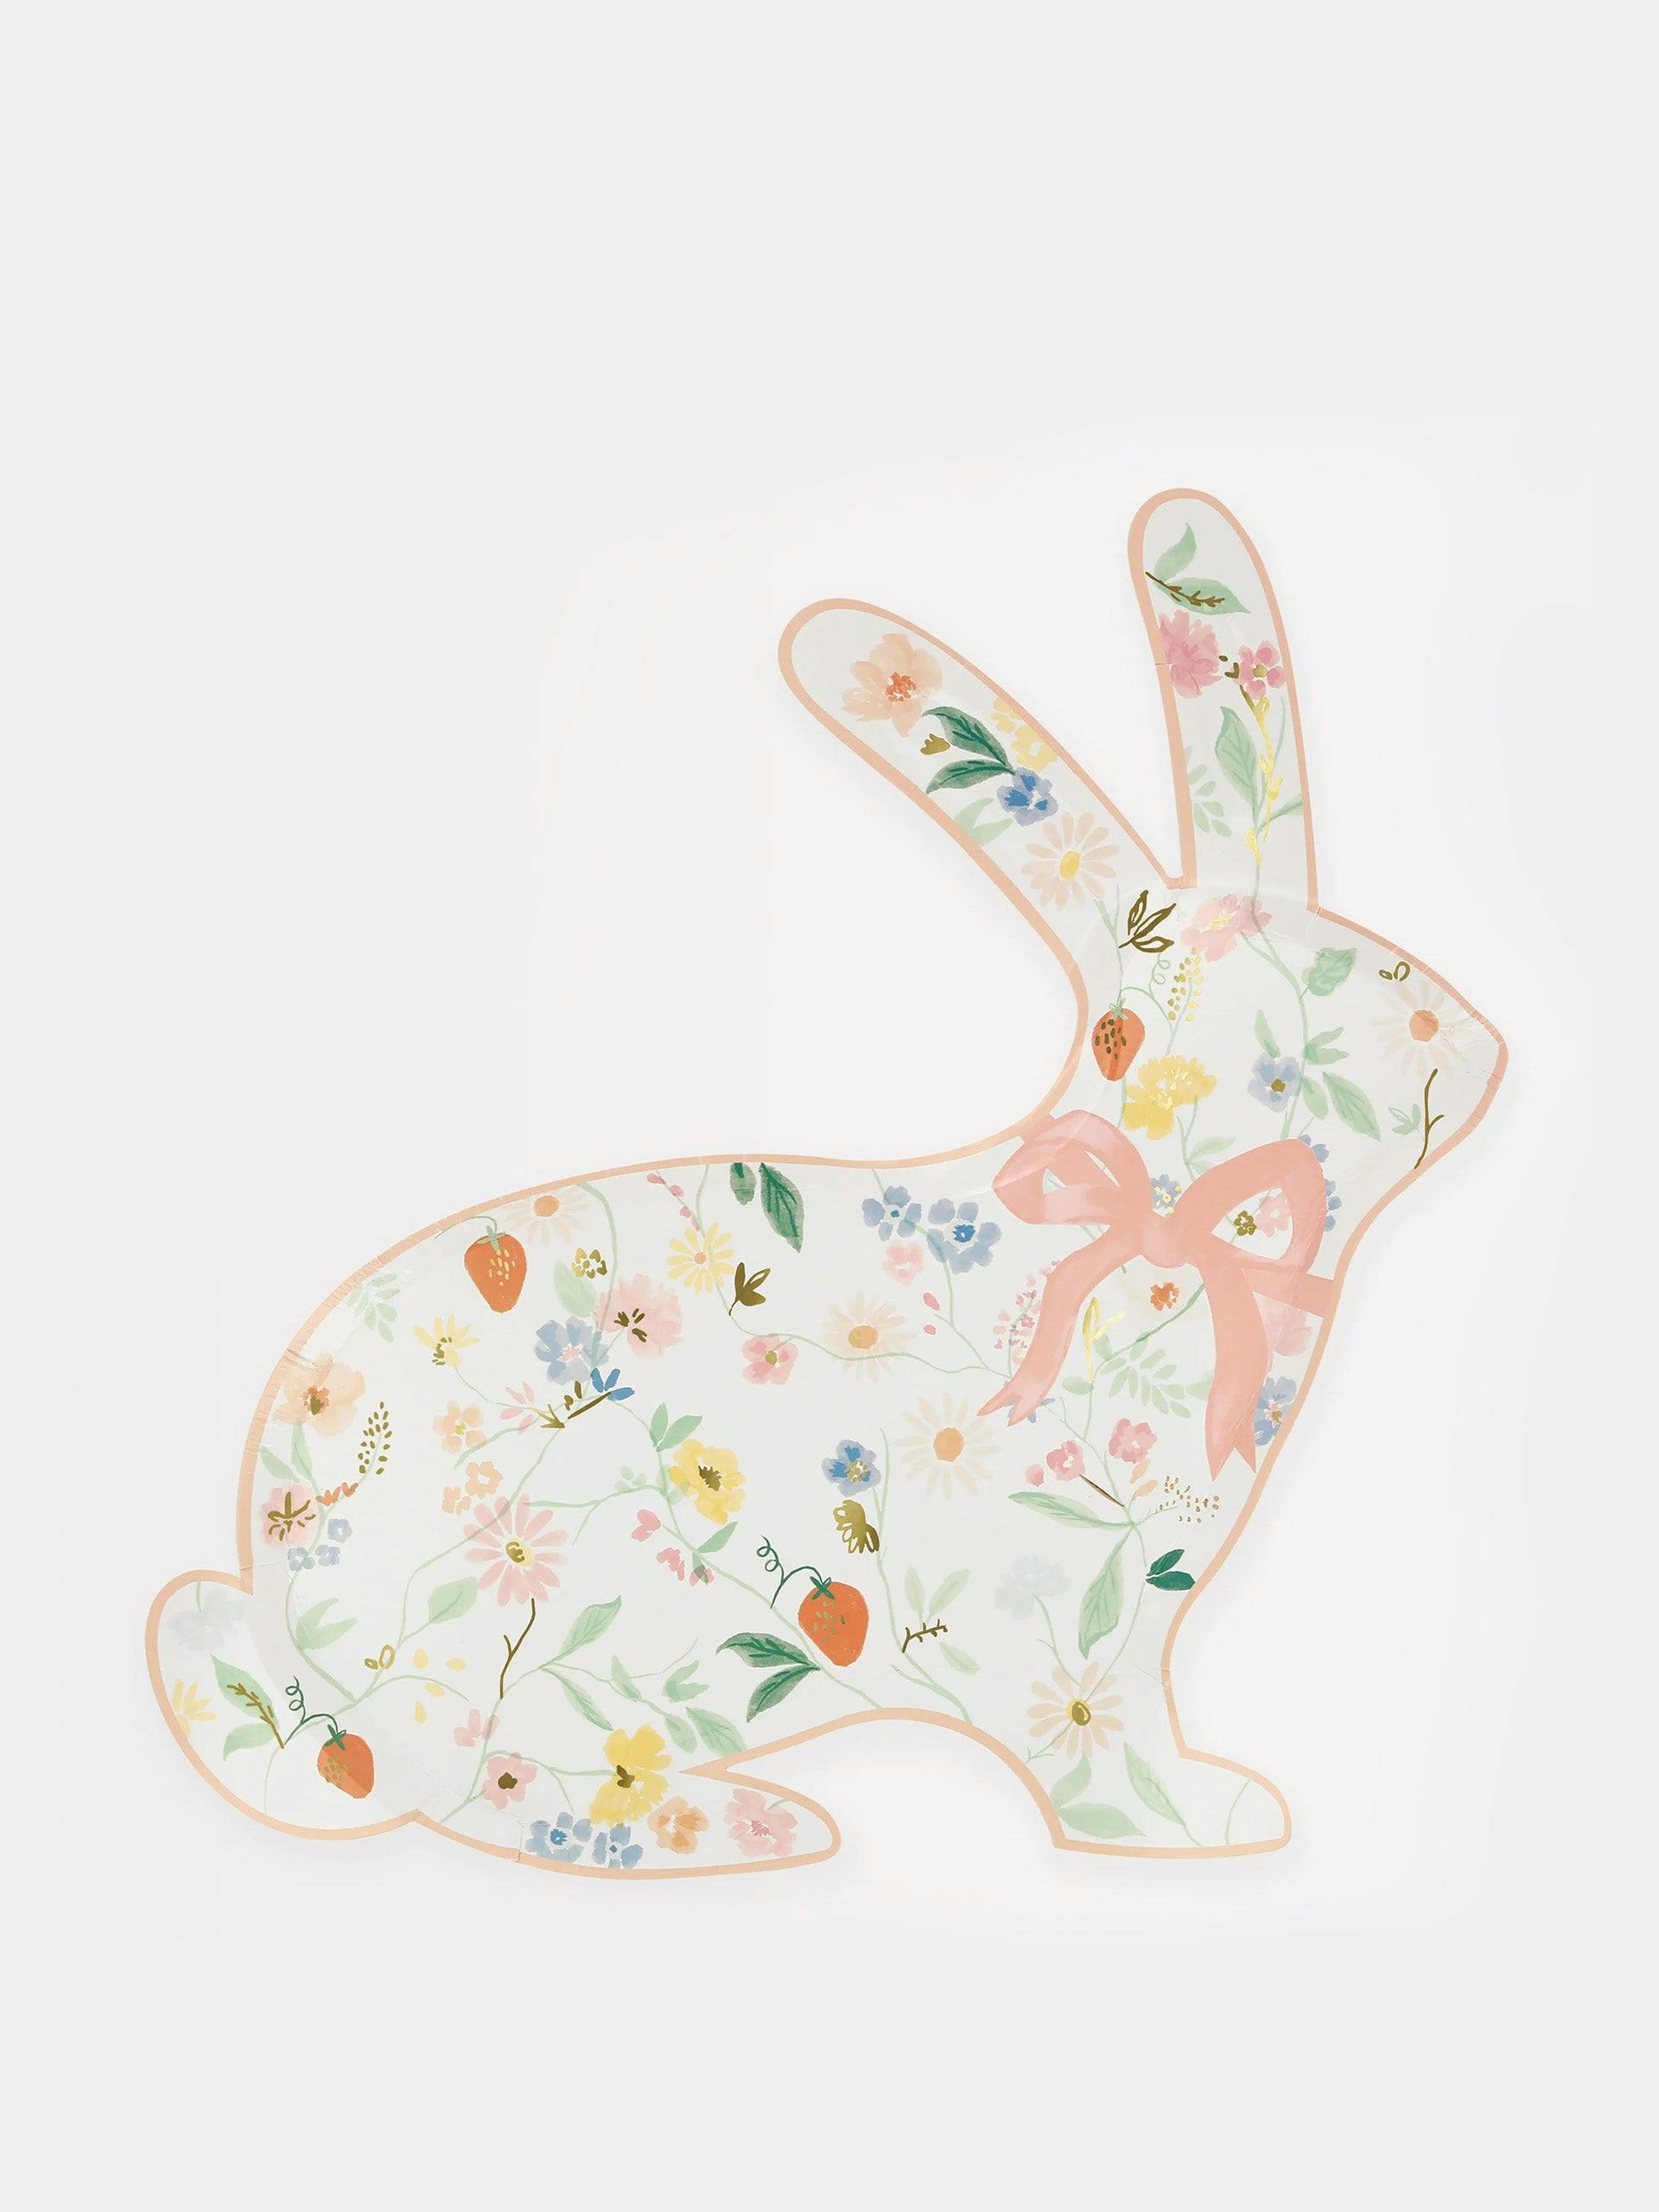 Elegant floral bunny paper plates (set of 8)